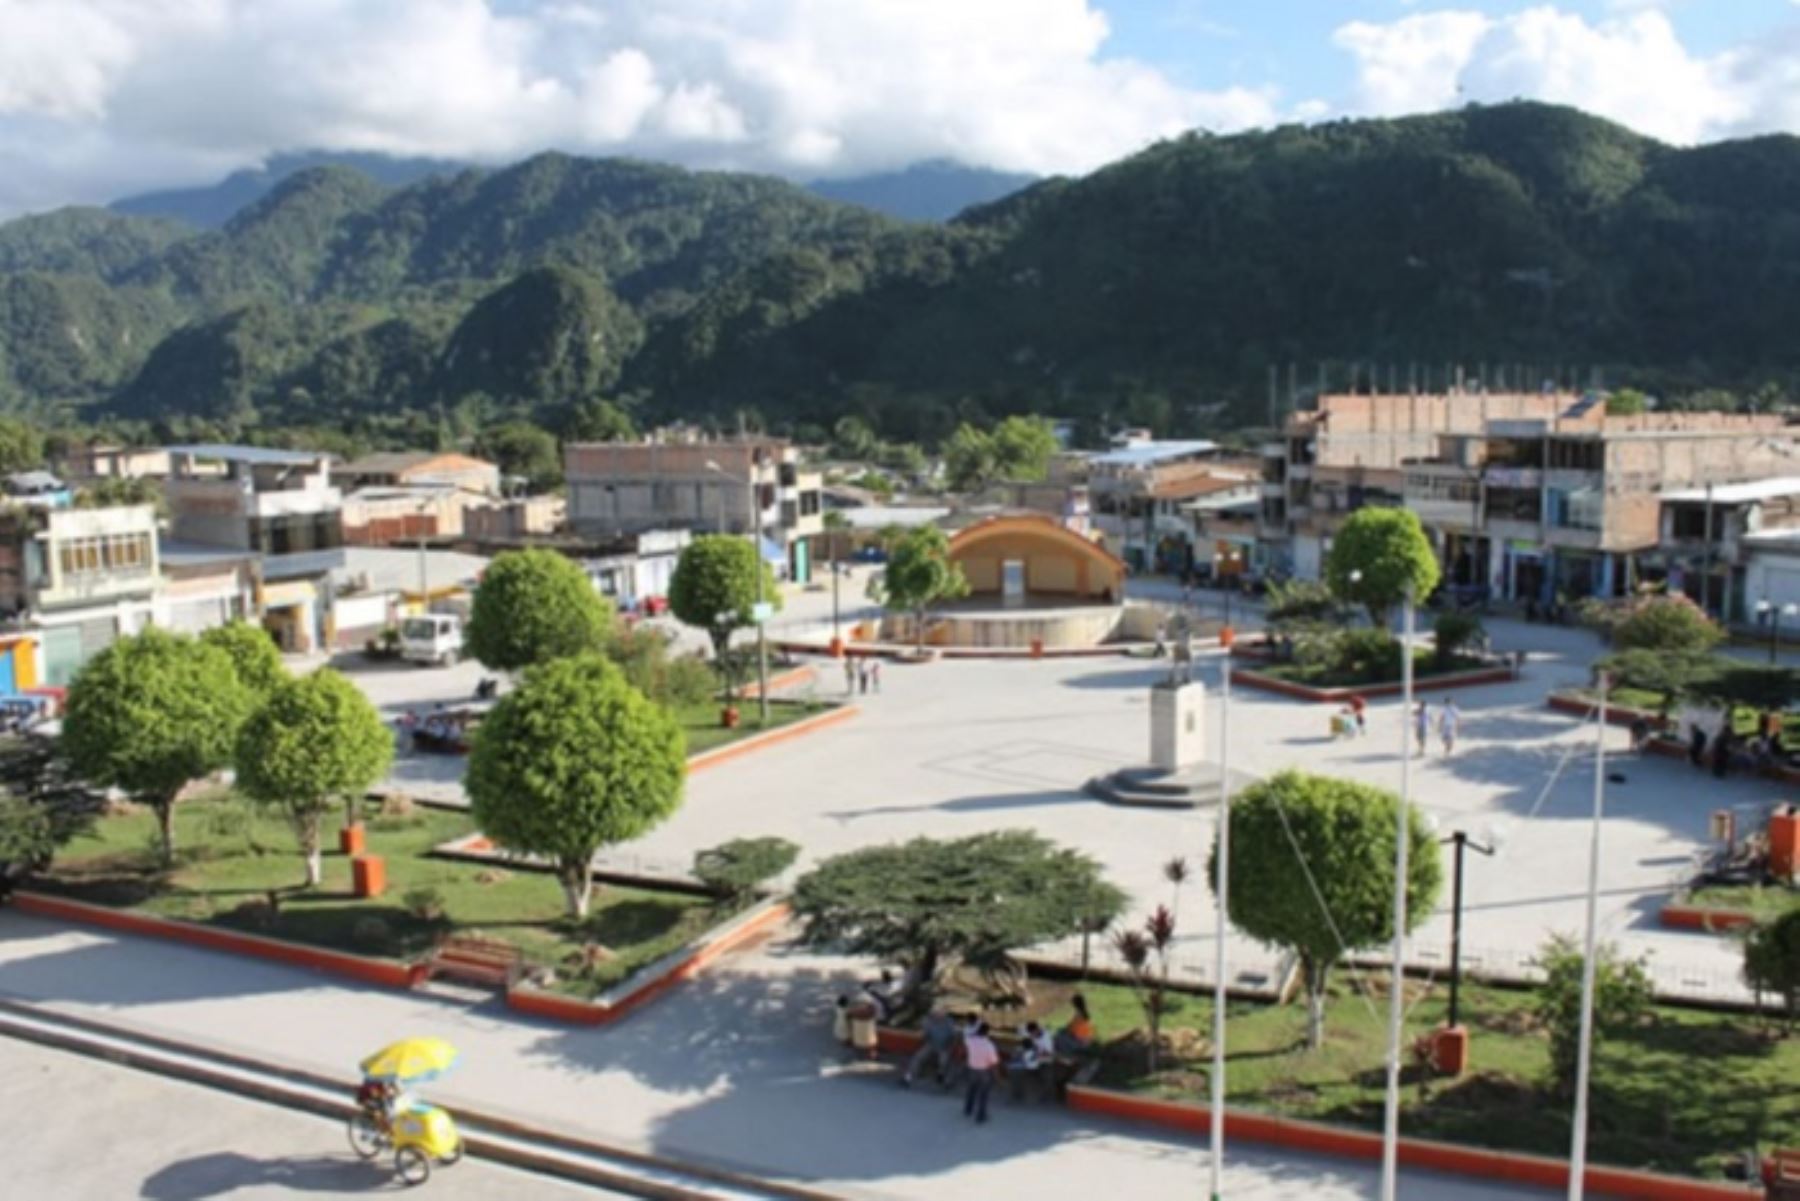 El epicentro del sismo de magnitud 4.6 se localizó cerca de la ciudad de Nueva Cajamarca, provincia de Rioja, región San Martín. ANDINA/Difusión